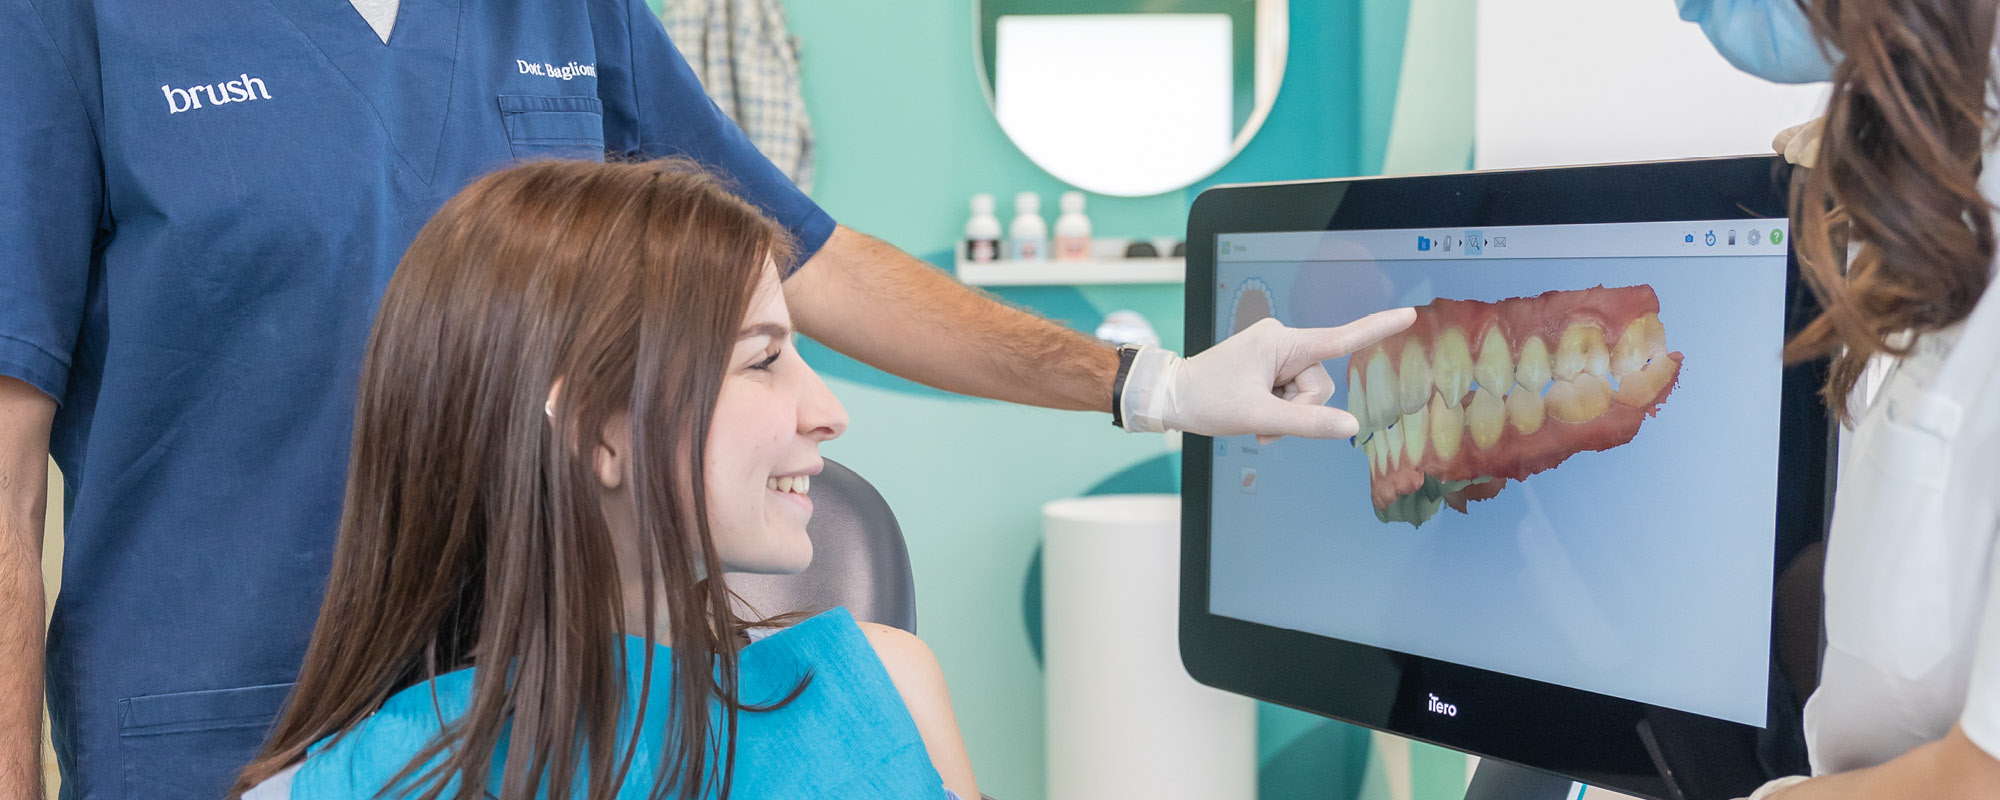 Faccette dentali estetiche: cosa aspettarsi dal trattamento con Smile Design negli studi Brush